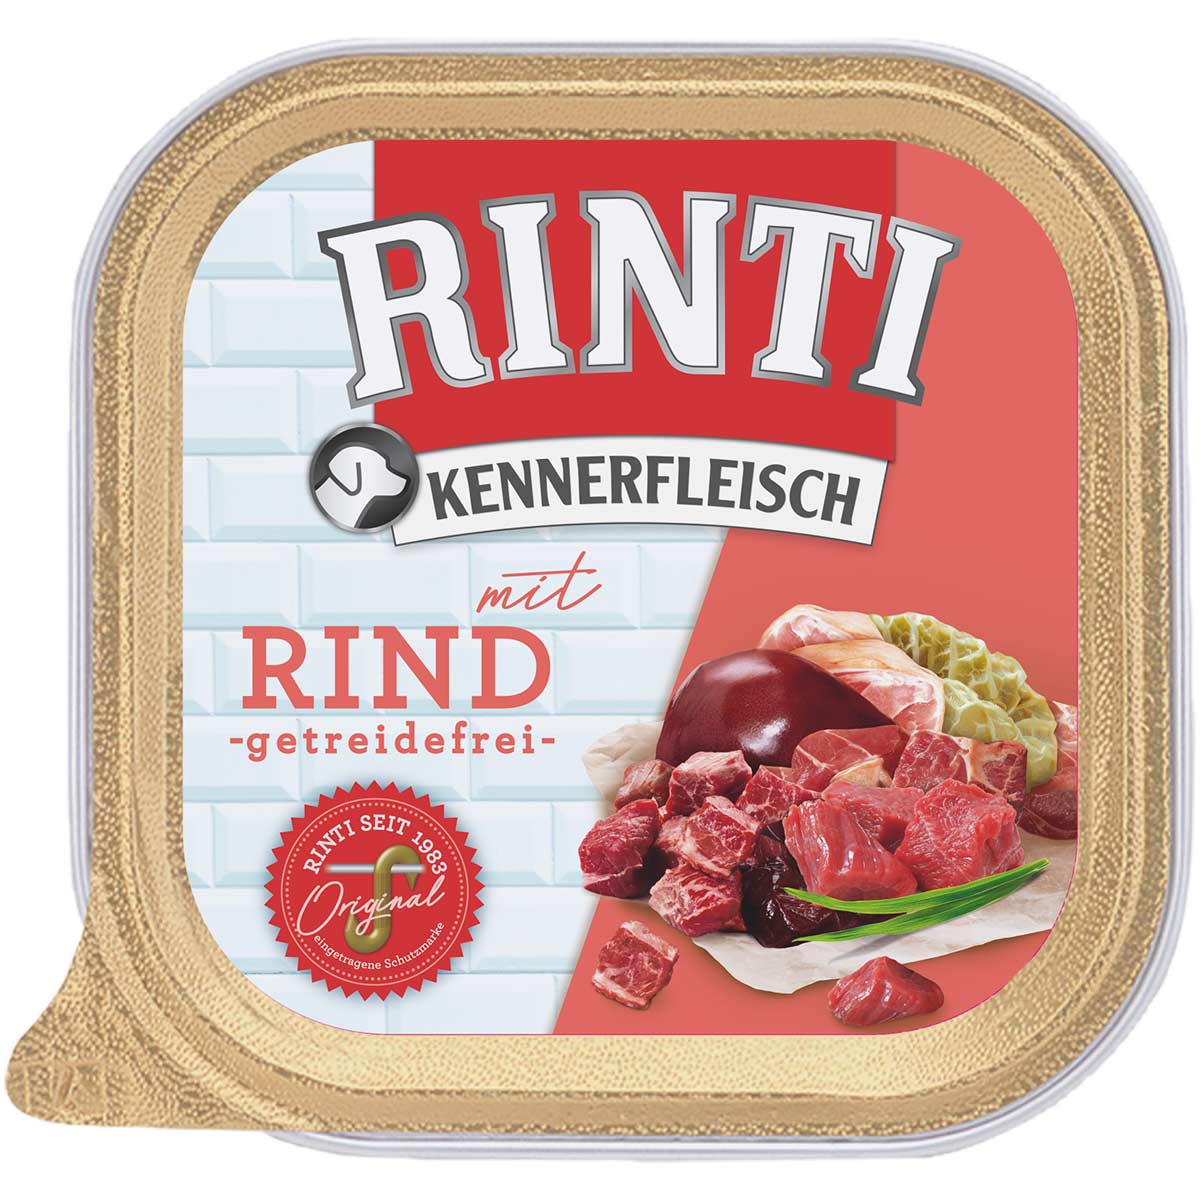 Rinti Kennerfleisch mit Rind 18x300g von Rinti